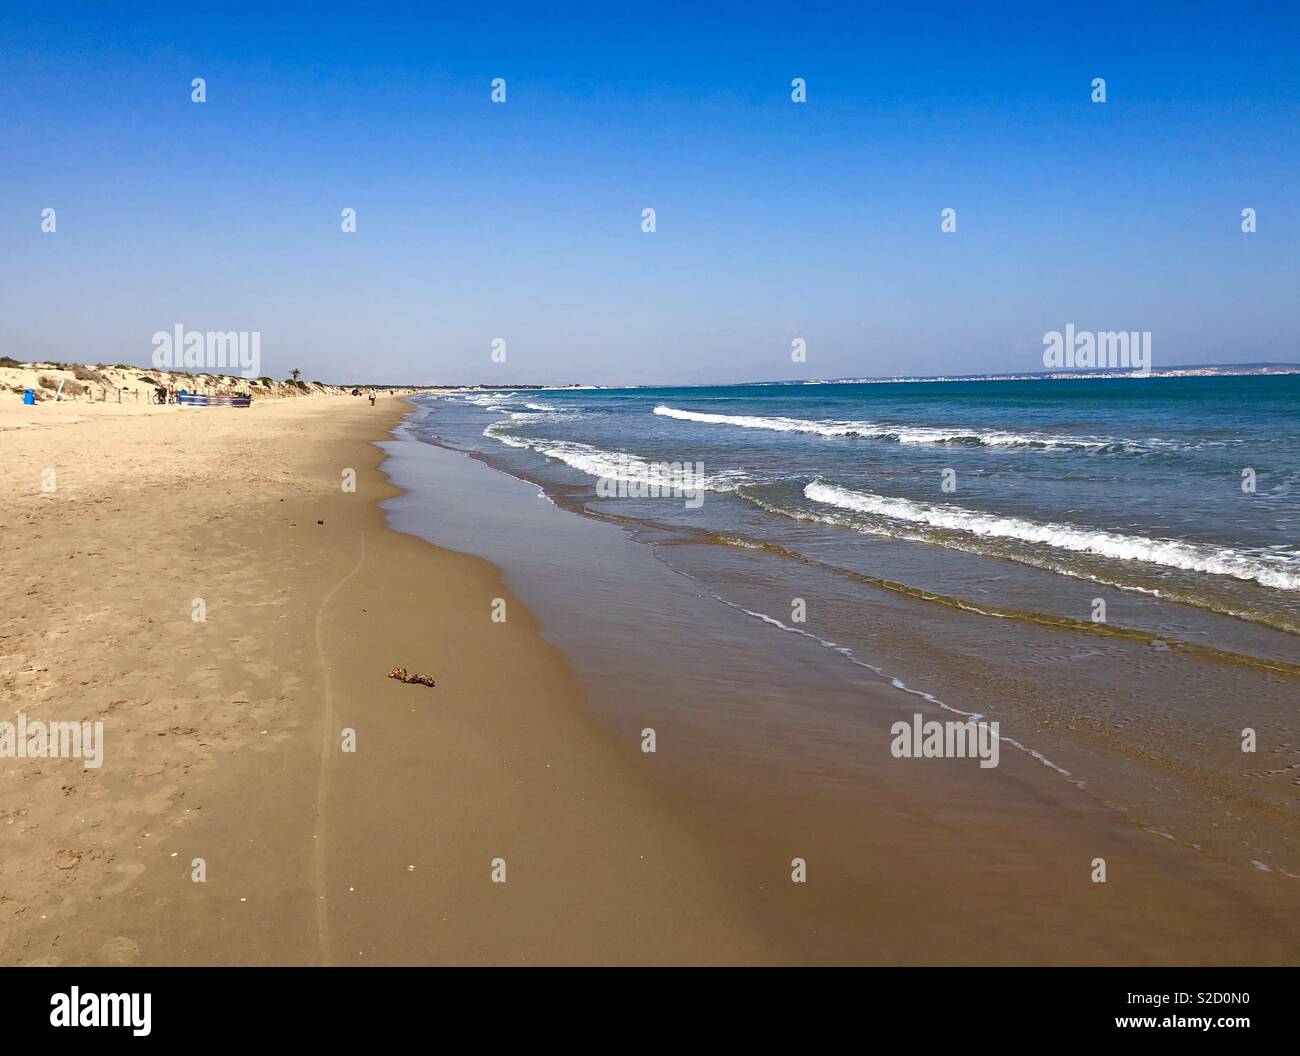 Spanish beach Stock Photo